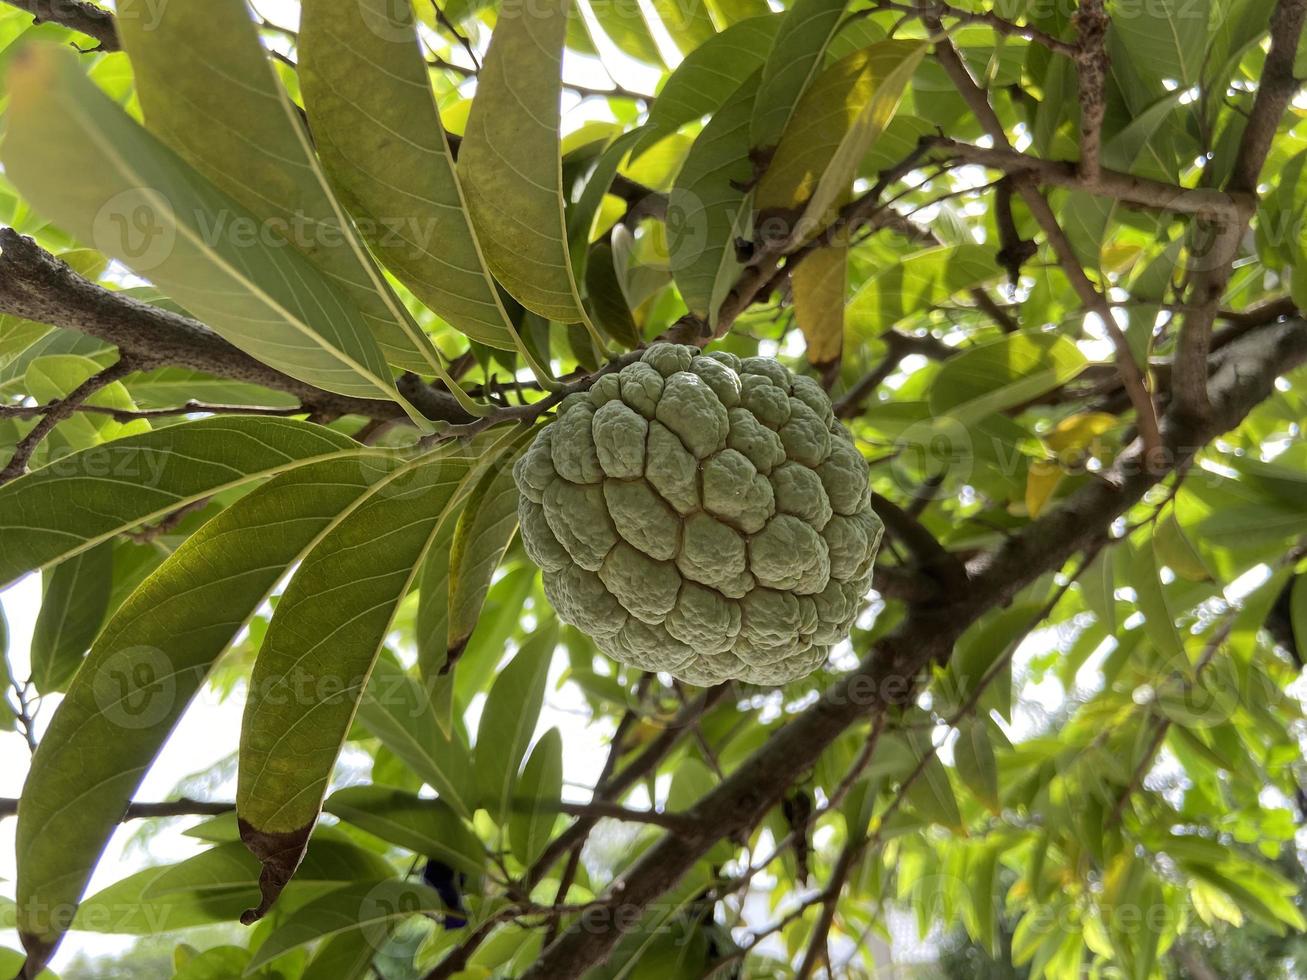 der zuckerapfel oder zuckerapfel, sirikaya in indonesien ist die essbare frucht von annona squamosa, der am weitesten verbreiteten annona-art, die im tropischen klima amerikas und westindiens beheimatet ist. foto